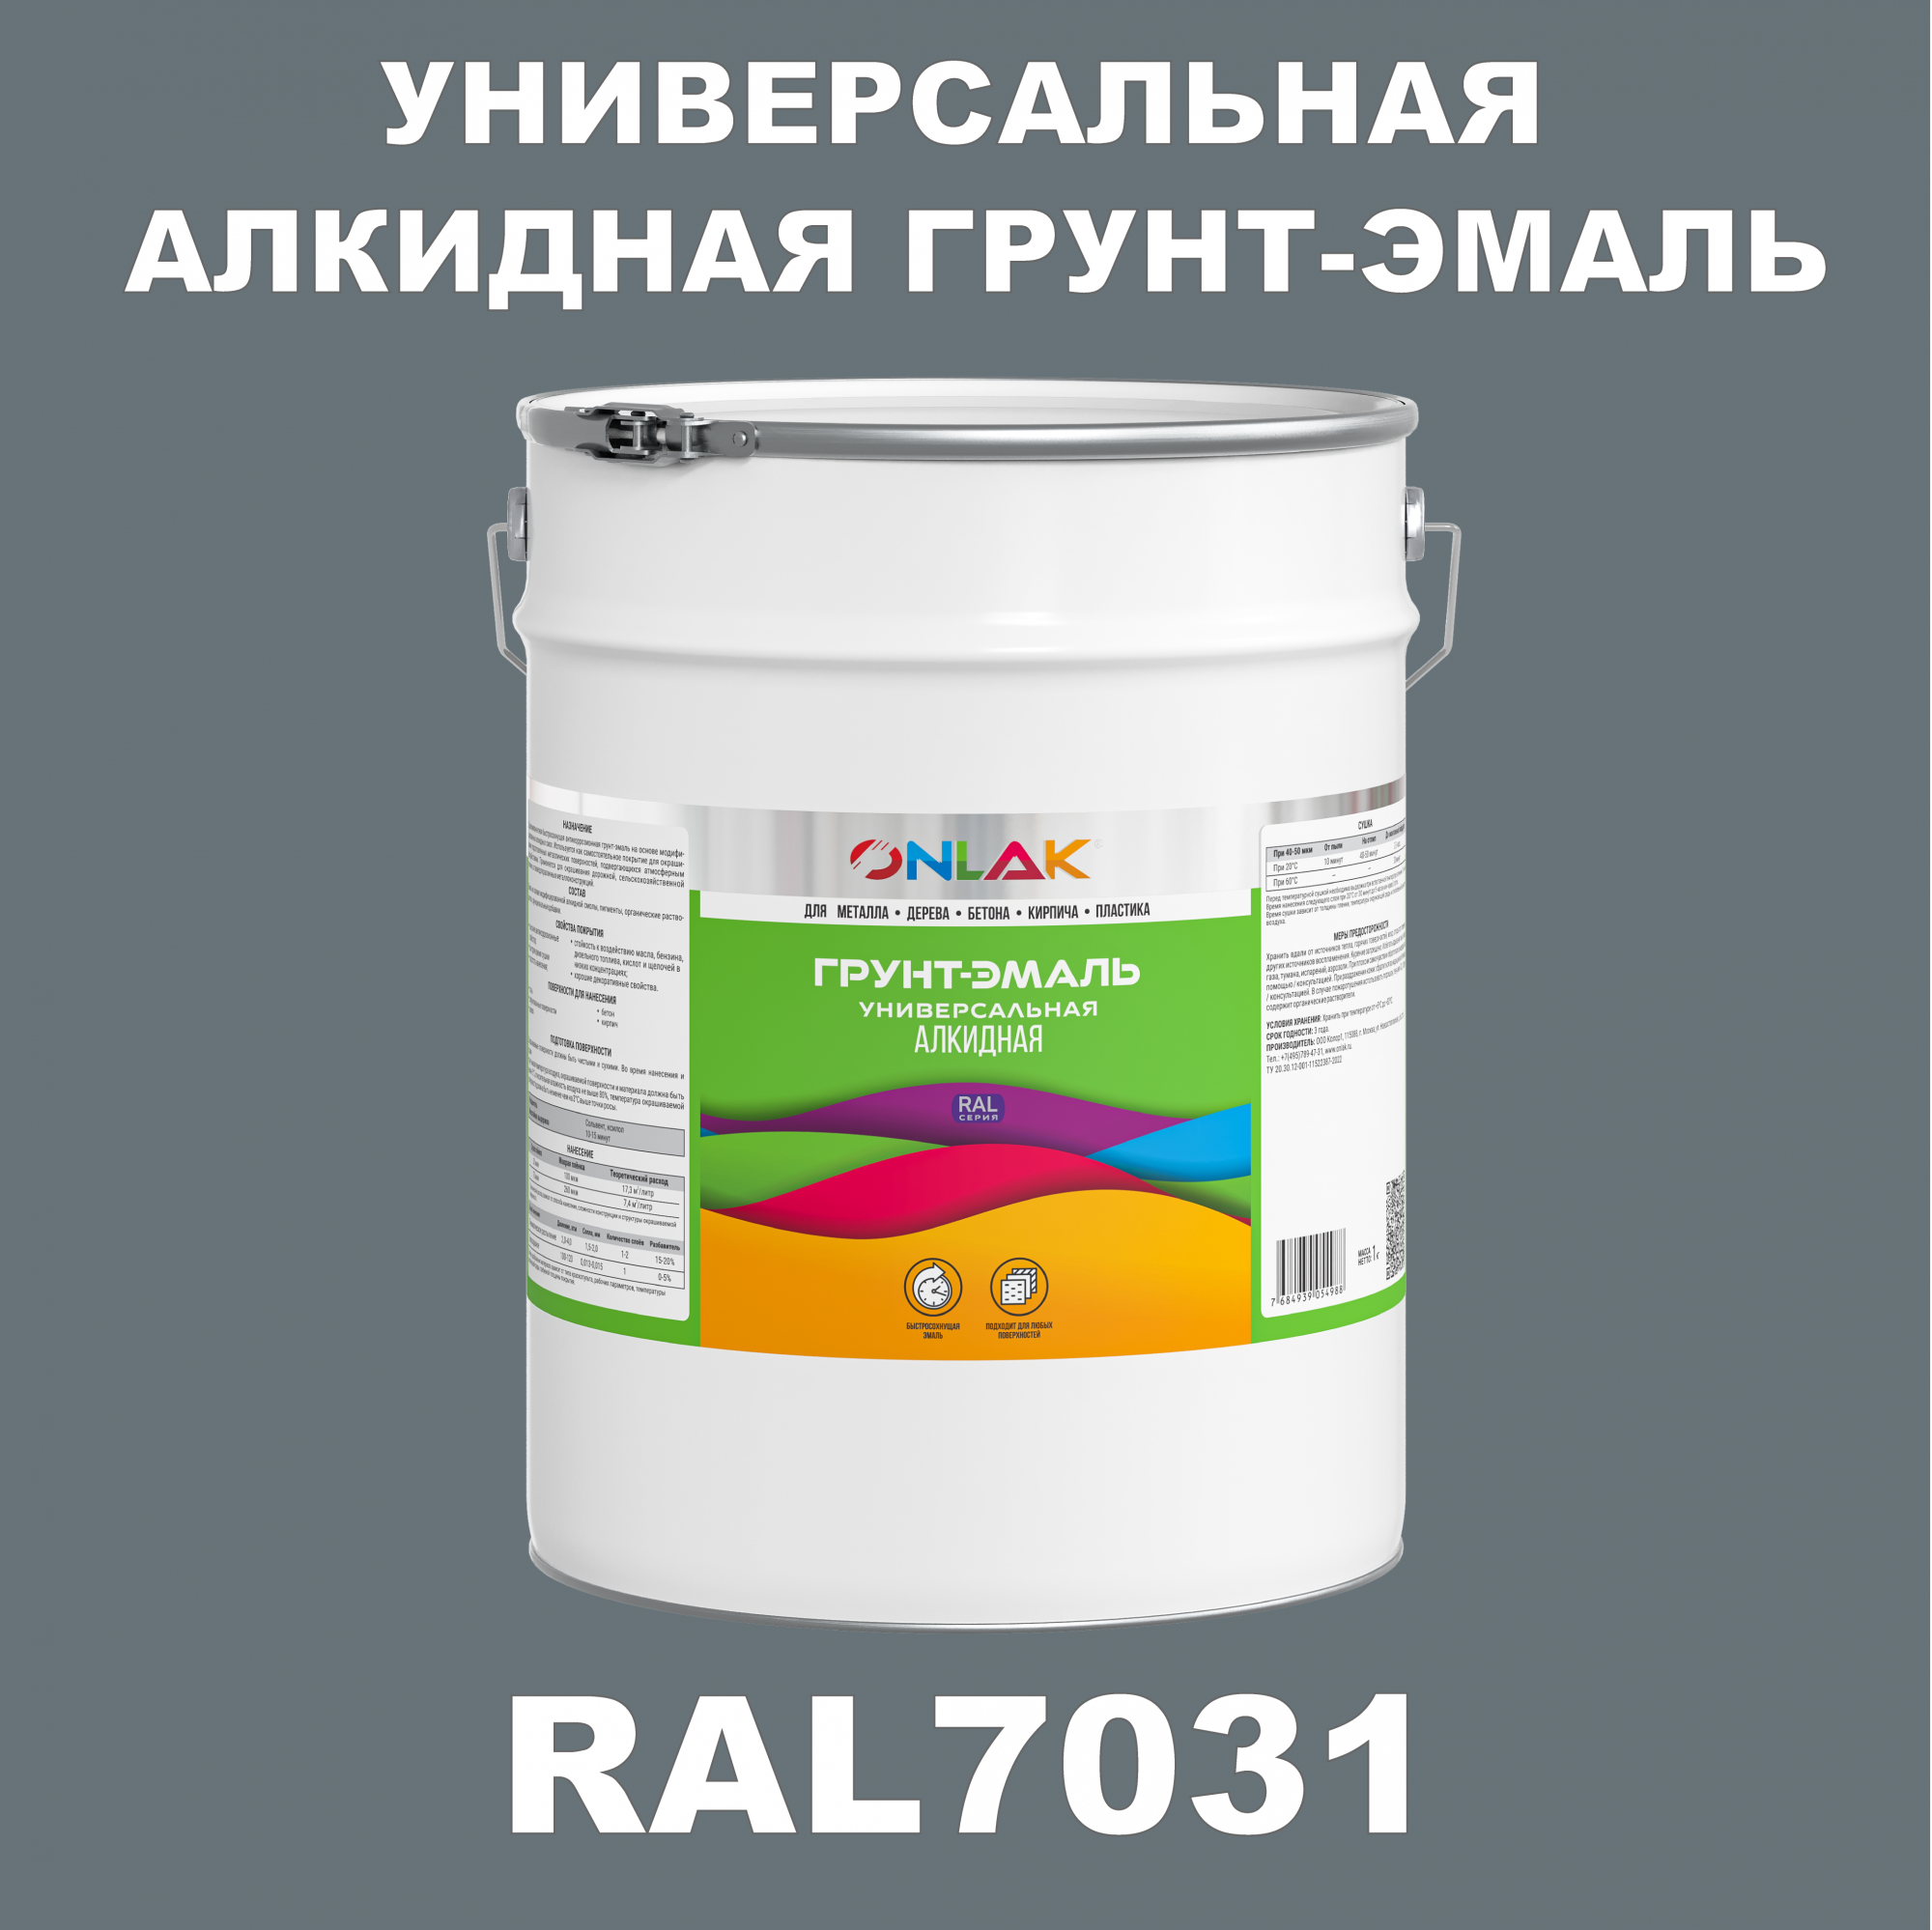 Грунт-эмаль ONLAK 1К RAL7031 антикоррозионная алкидная по металлу по ржавчине 20 кг грунт эмаль neomid по ржавчине быстросохнущая алкидная серая 0 9 кг